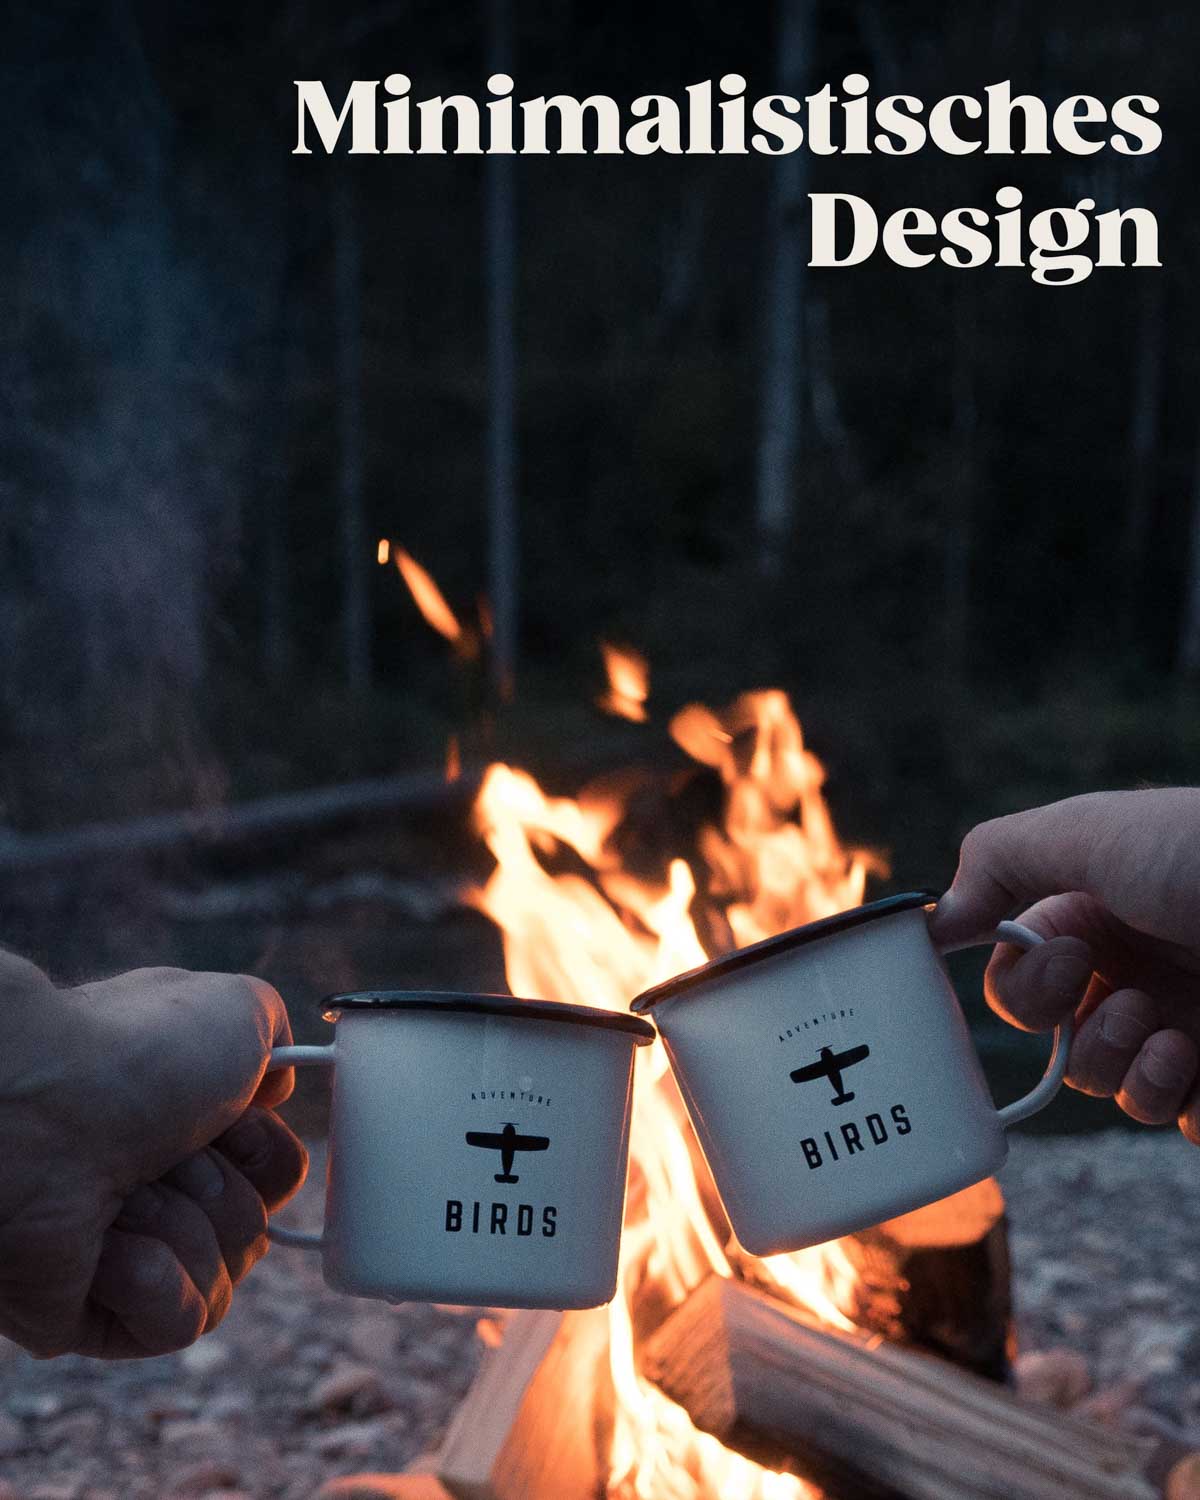 Zwei BIRDS Tassen werden vor einem flackernden Lagerfeuer zueinander erhoben. Das minimalistische Design der Tassen besticht durch den faszinierenden Kontrast von Schwarz und Weiß sowie das schlichte Logo, was ihnen eine  zugleich moderne Ausstrahlung verleiht.